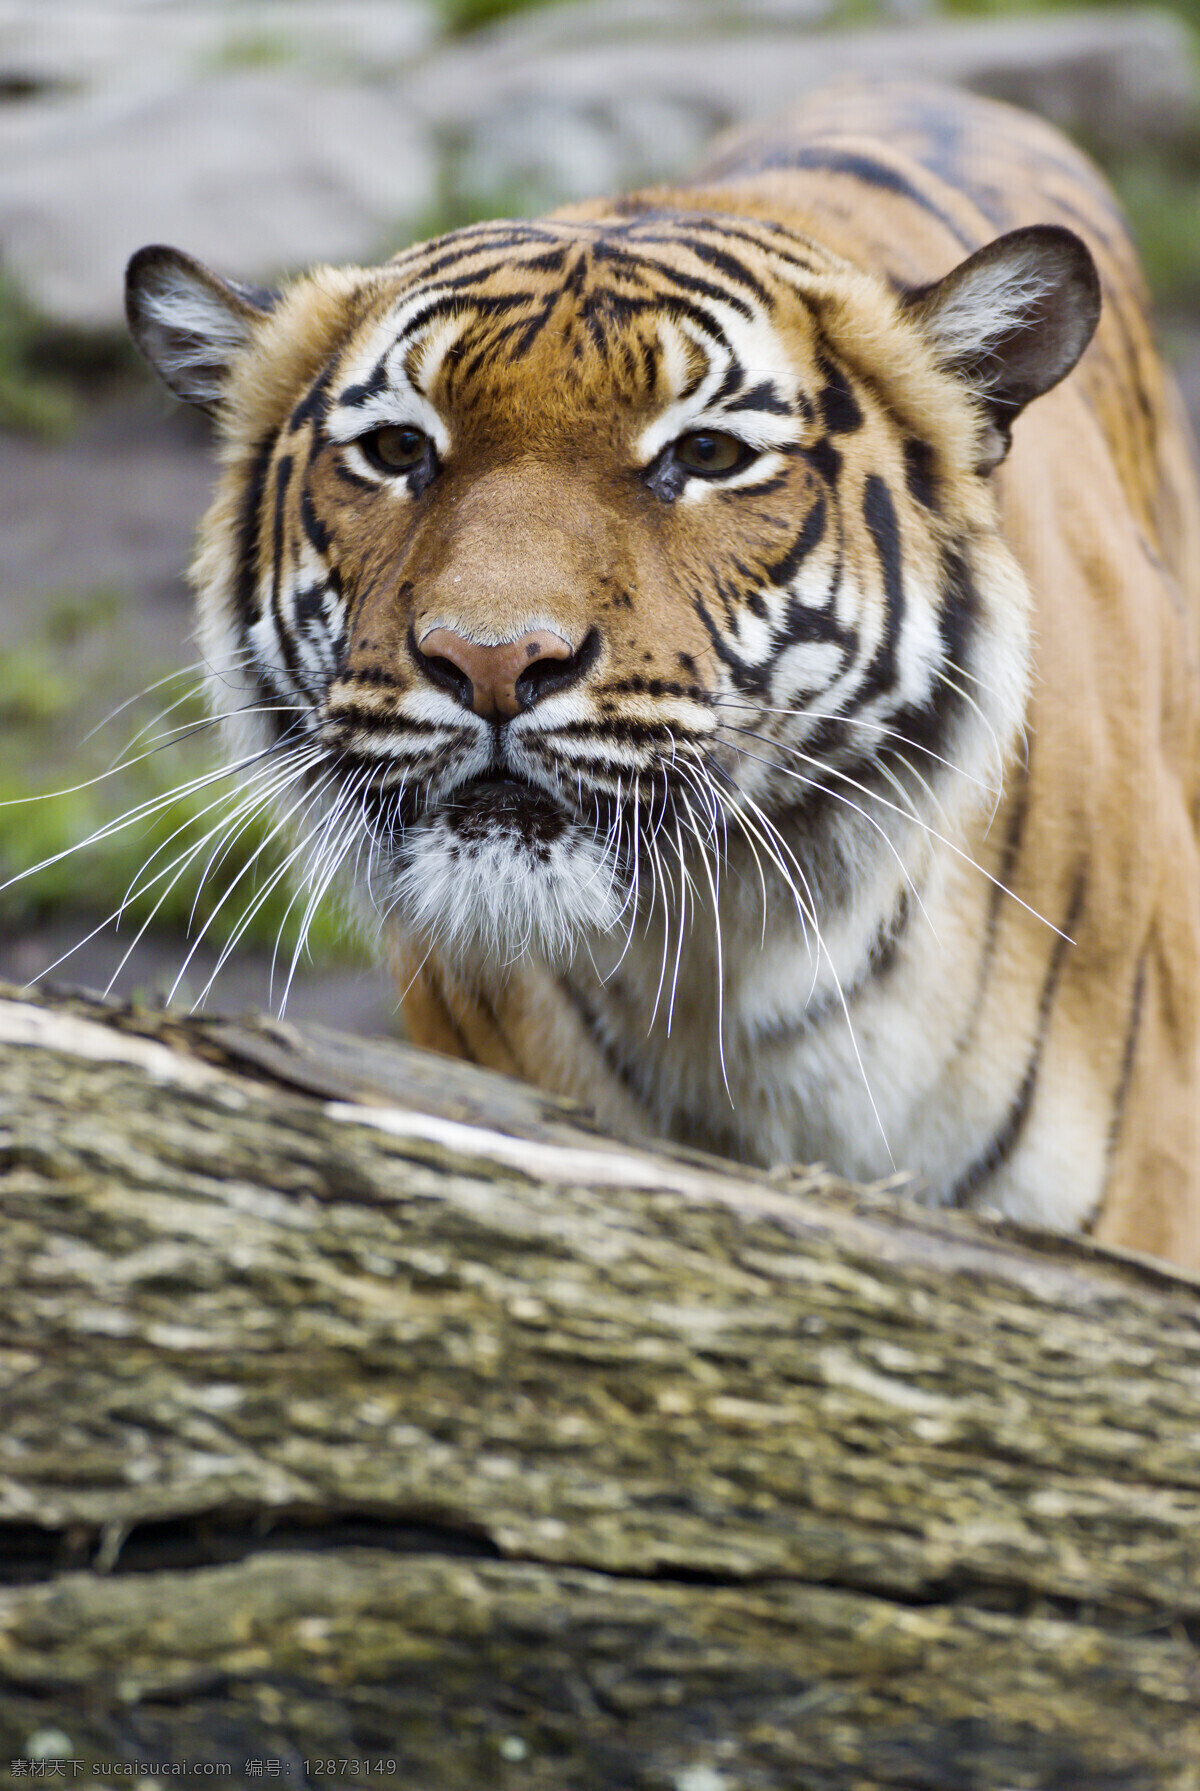 凶猛 老虎 动物 高清 公园 百兽之王 陆地动物 野生动物 动物世界 动物摄影 动物图片 灰色